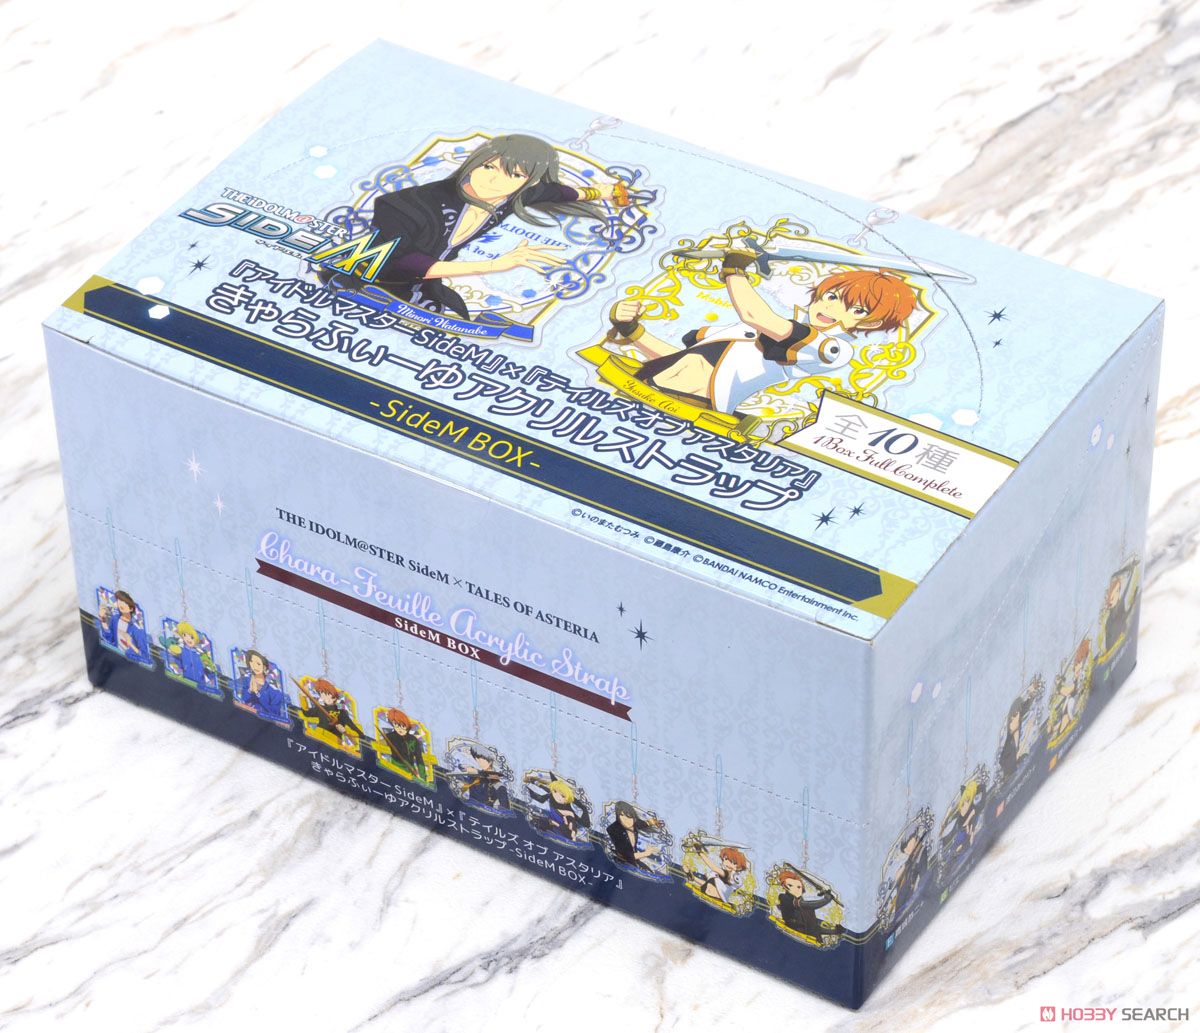 『アイドルマスター SideM』×『テイルズ オブ アスタリア』 きゃらふぃーゆアクリルストラップ -SideM BOX- 10個セット (キャラクターグッズ) パッケージ1